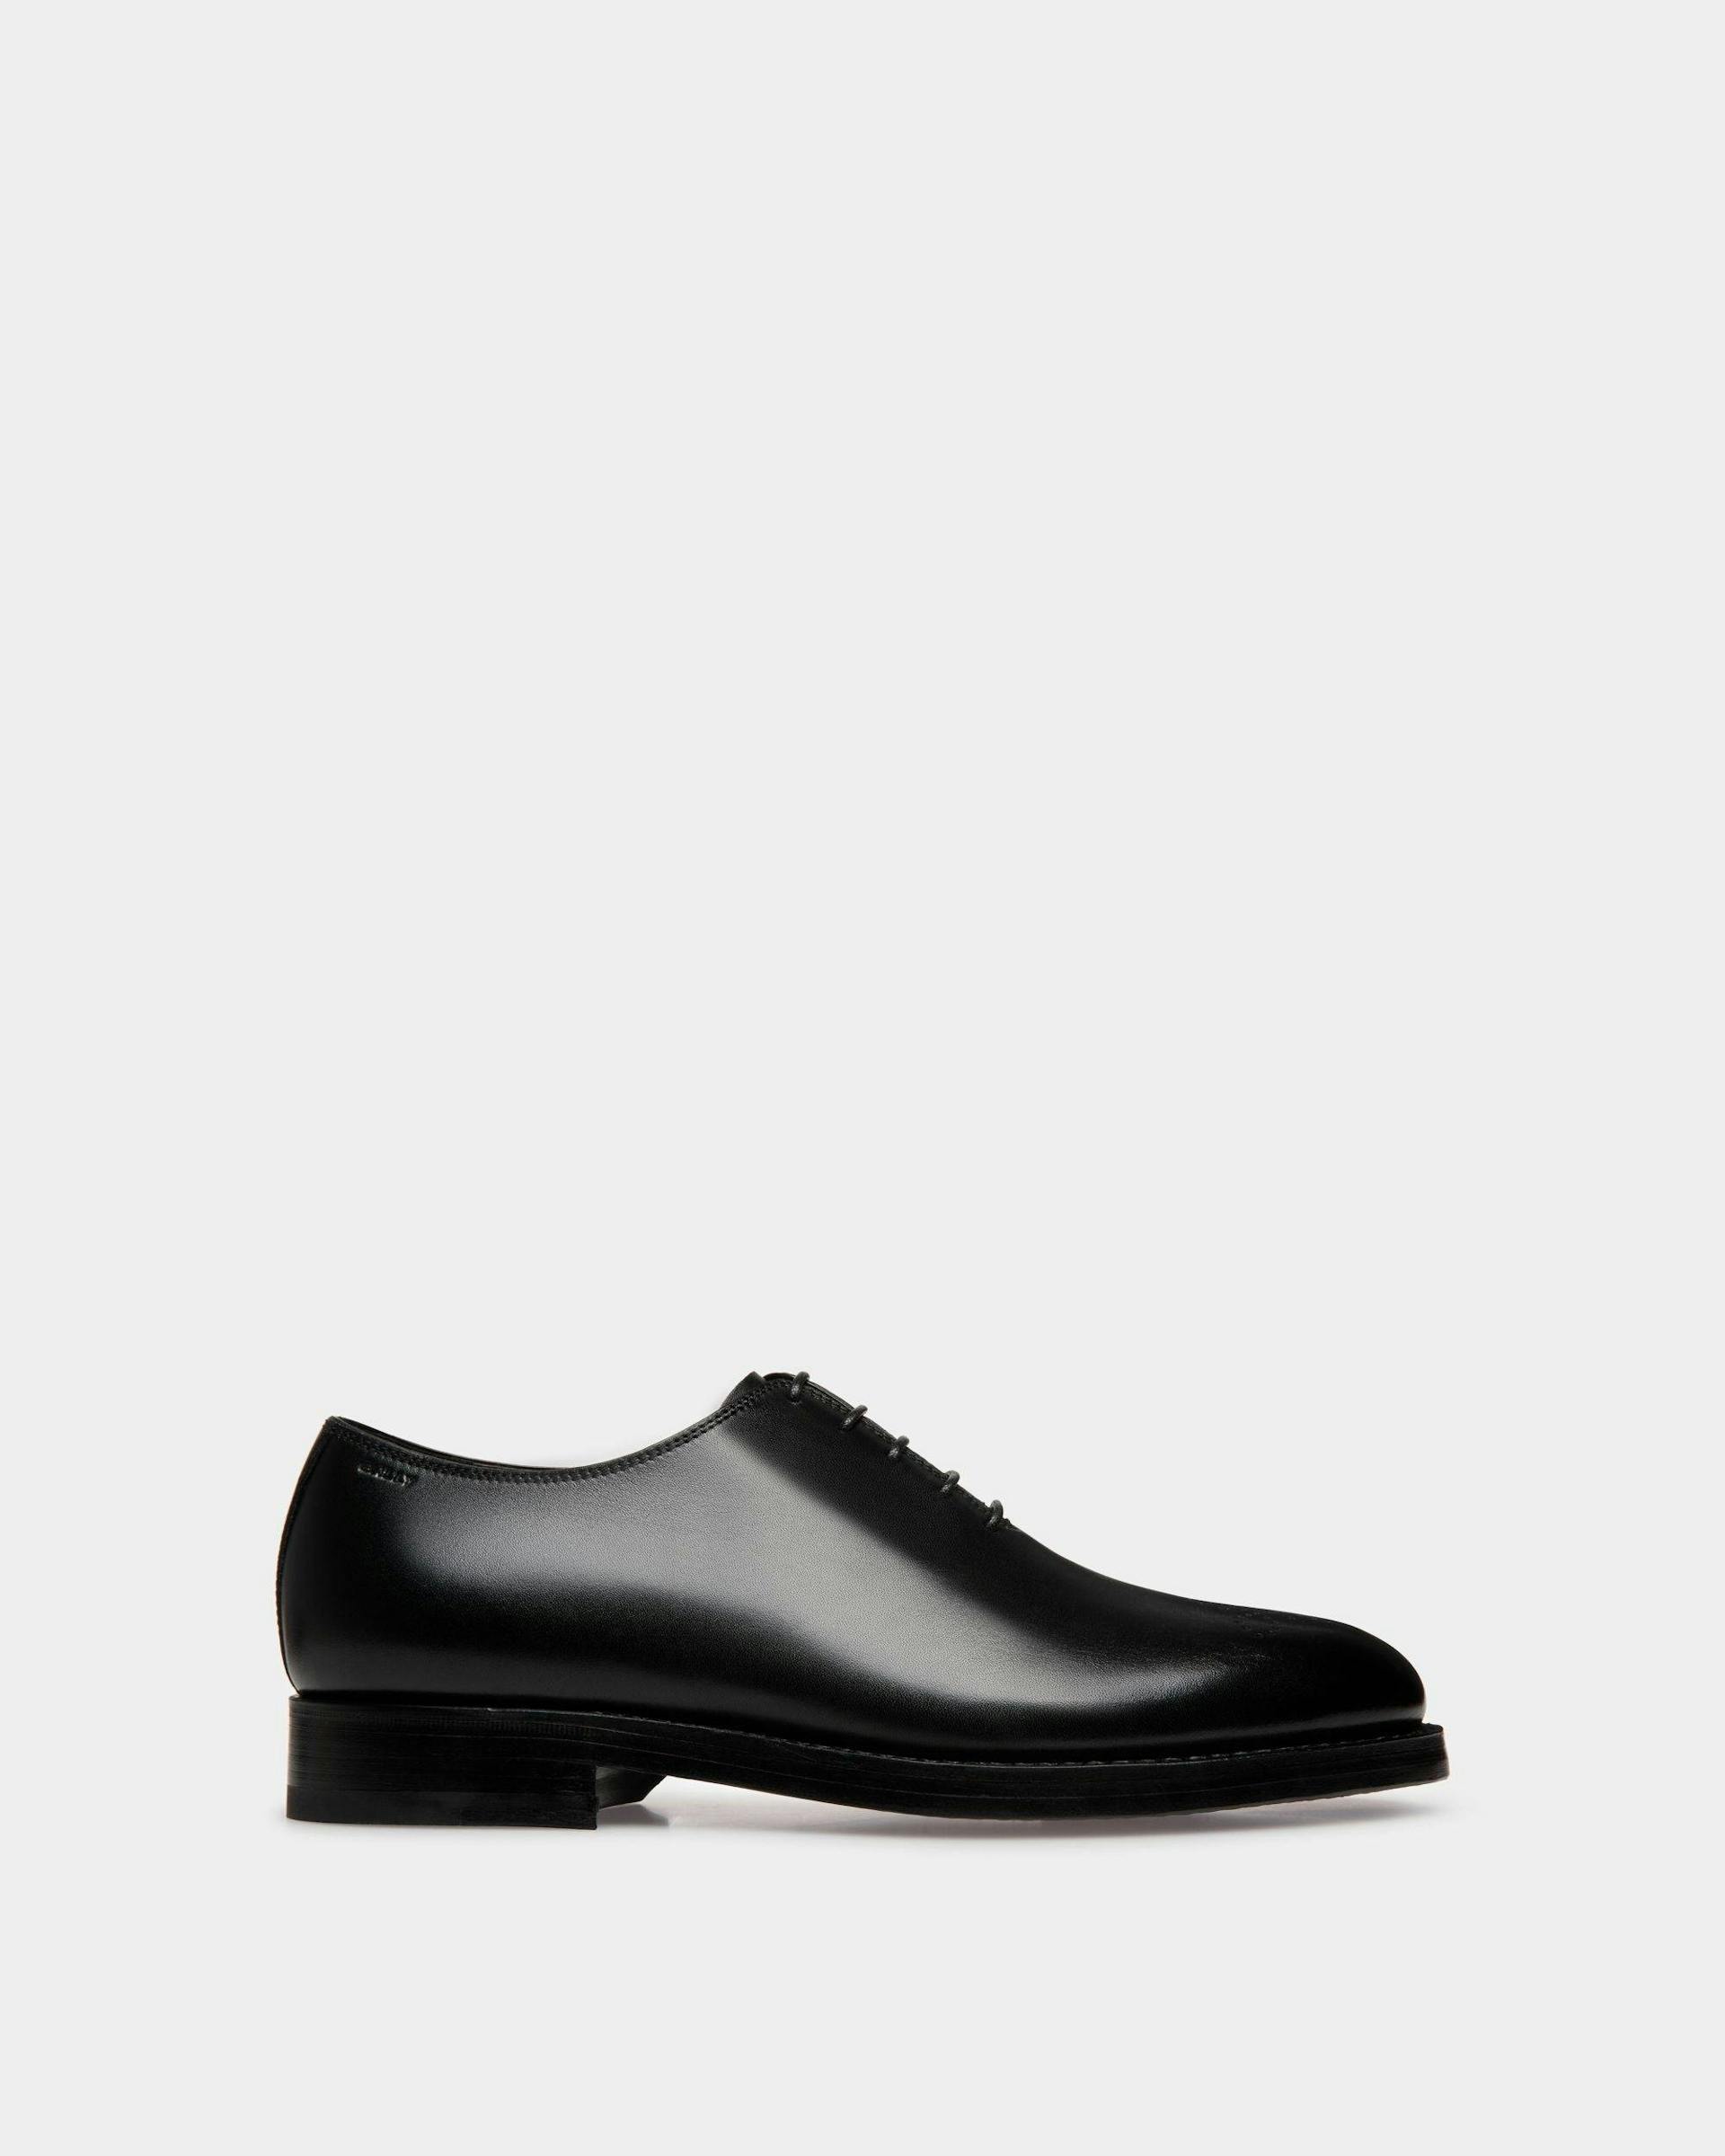 Men's Schoenen Oxford In Black Leather | Bally | Still Life Side